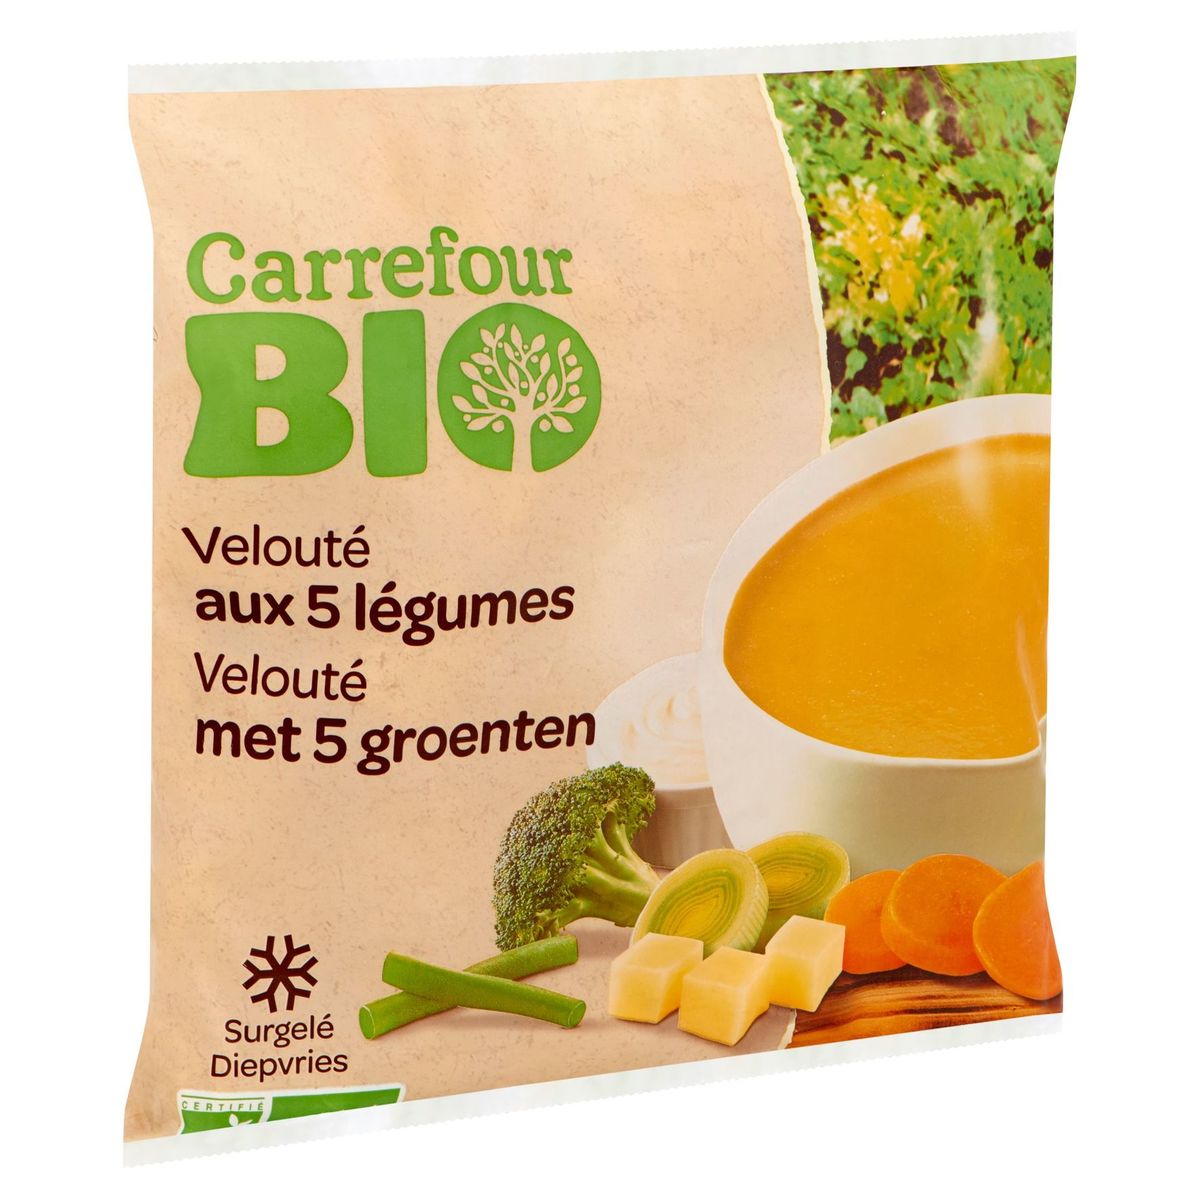 Carrefour Bio Velouté aux 5 Légumes 1 kg